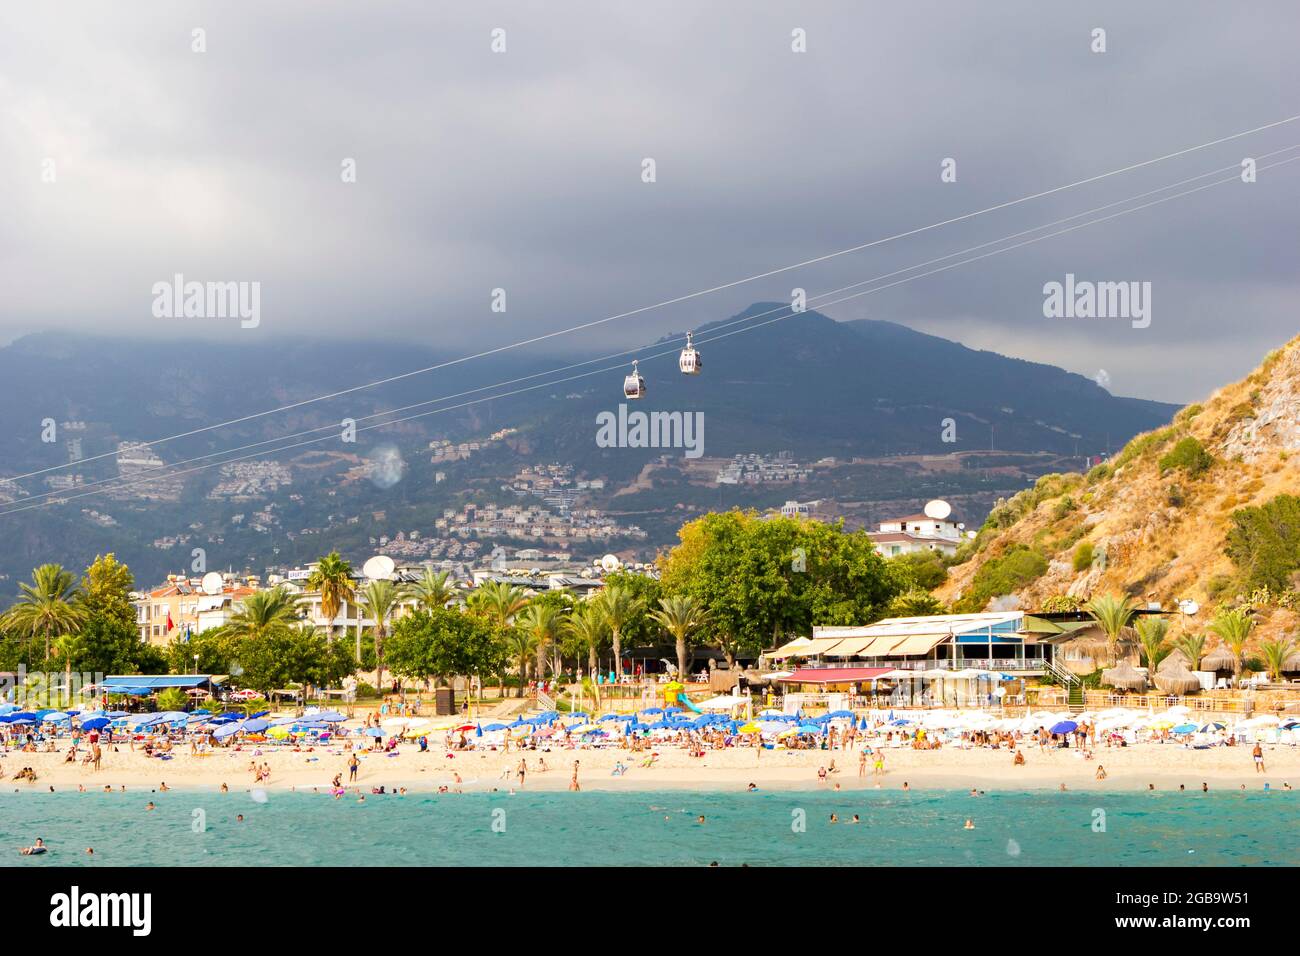 Turchia, Alanya, Cleopatra spiaggia - 30 agosto 2017: Persone sulla spiaggia, vista dal mare, sullo sfondo di montagne e funicolare. Foto Stock